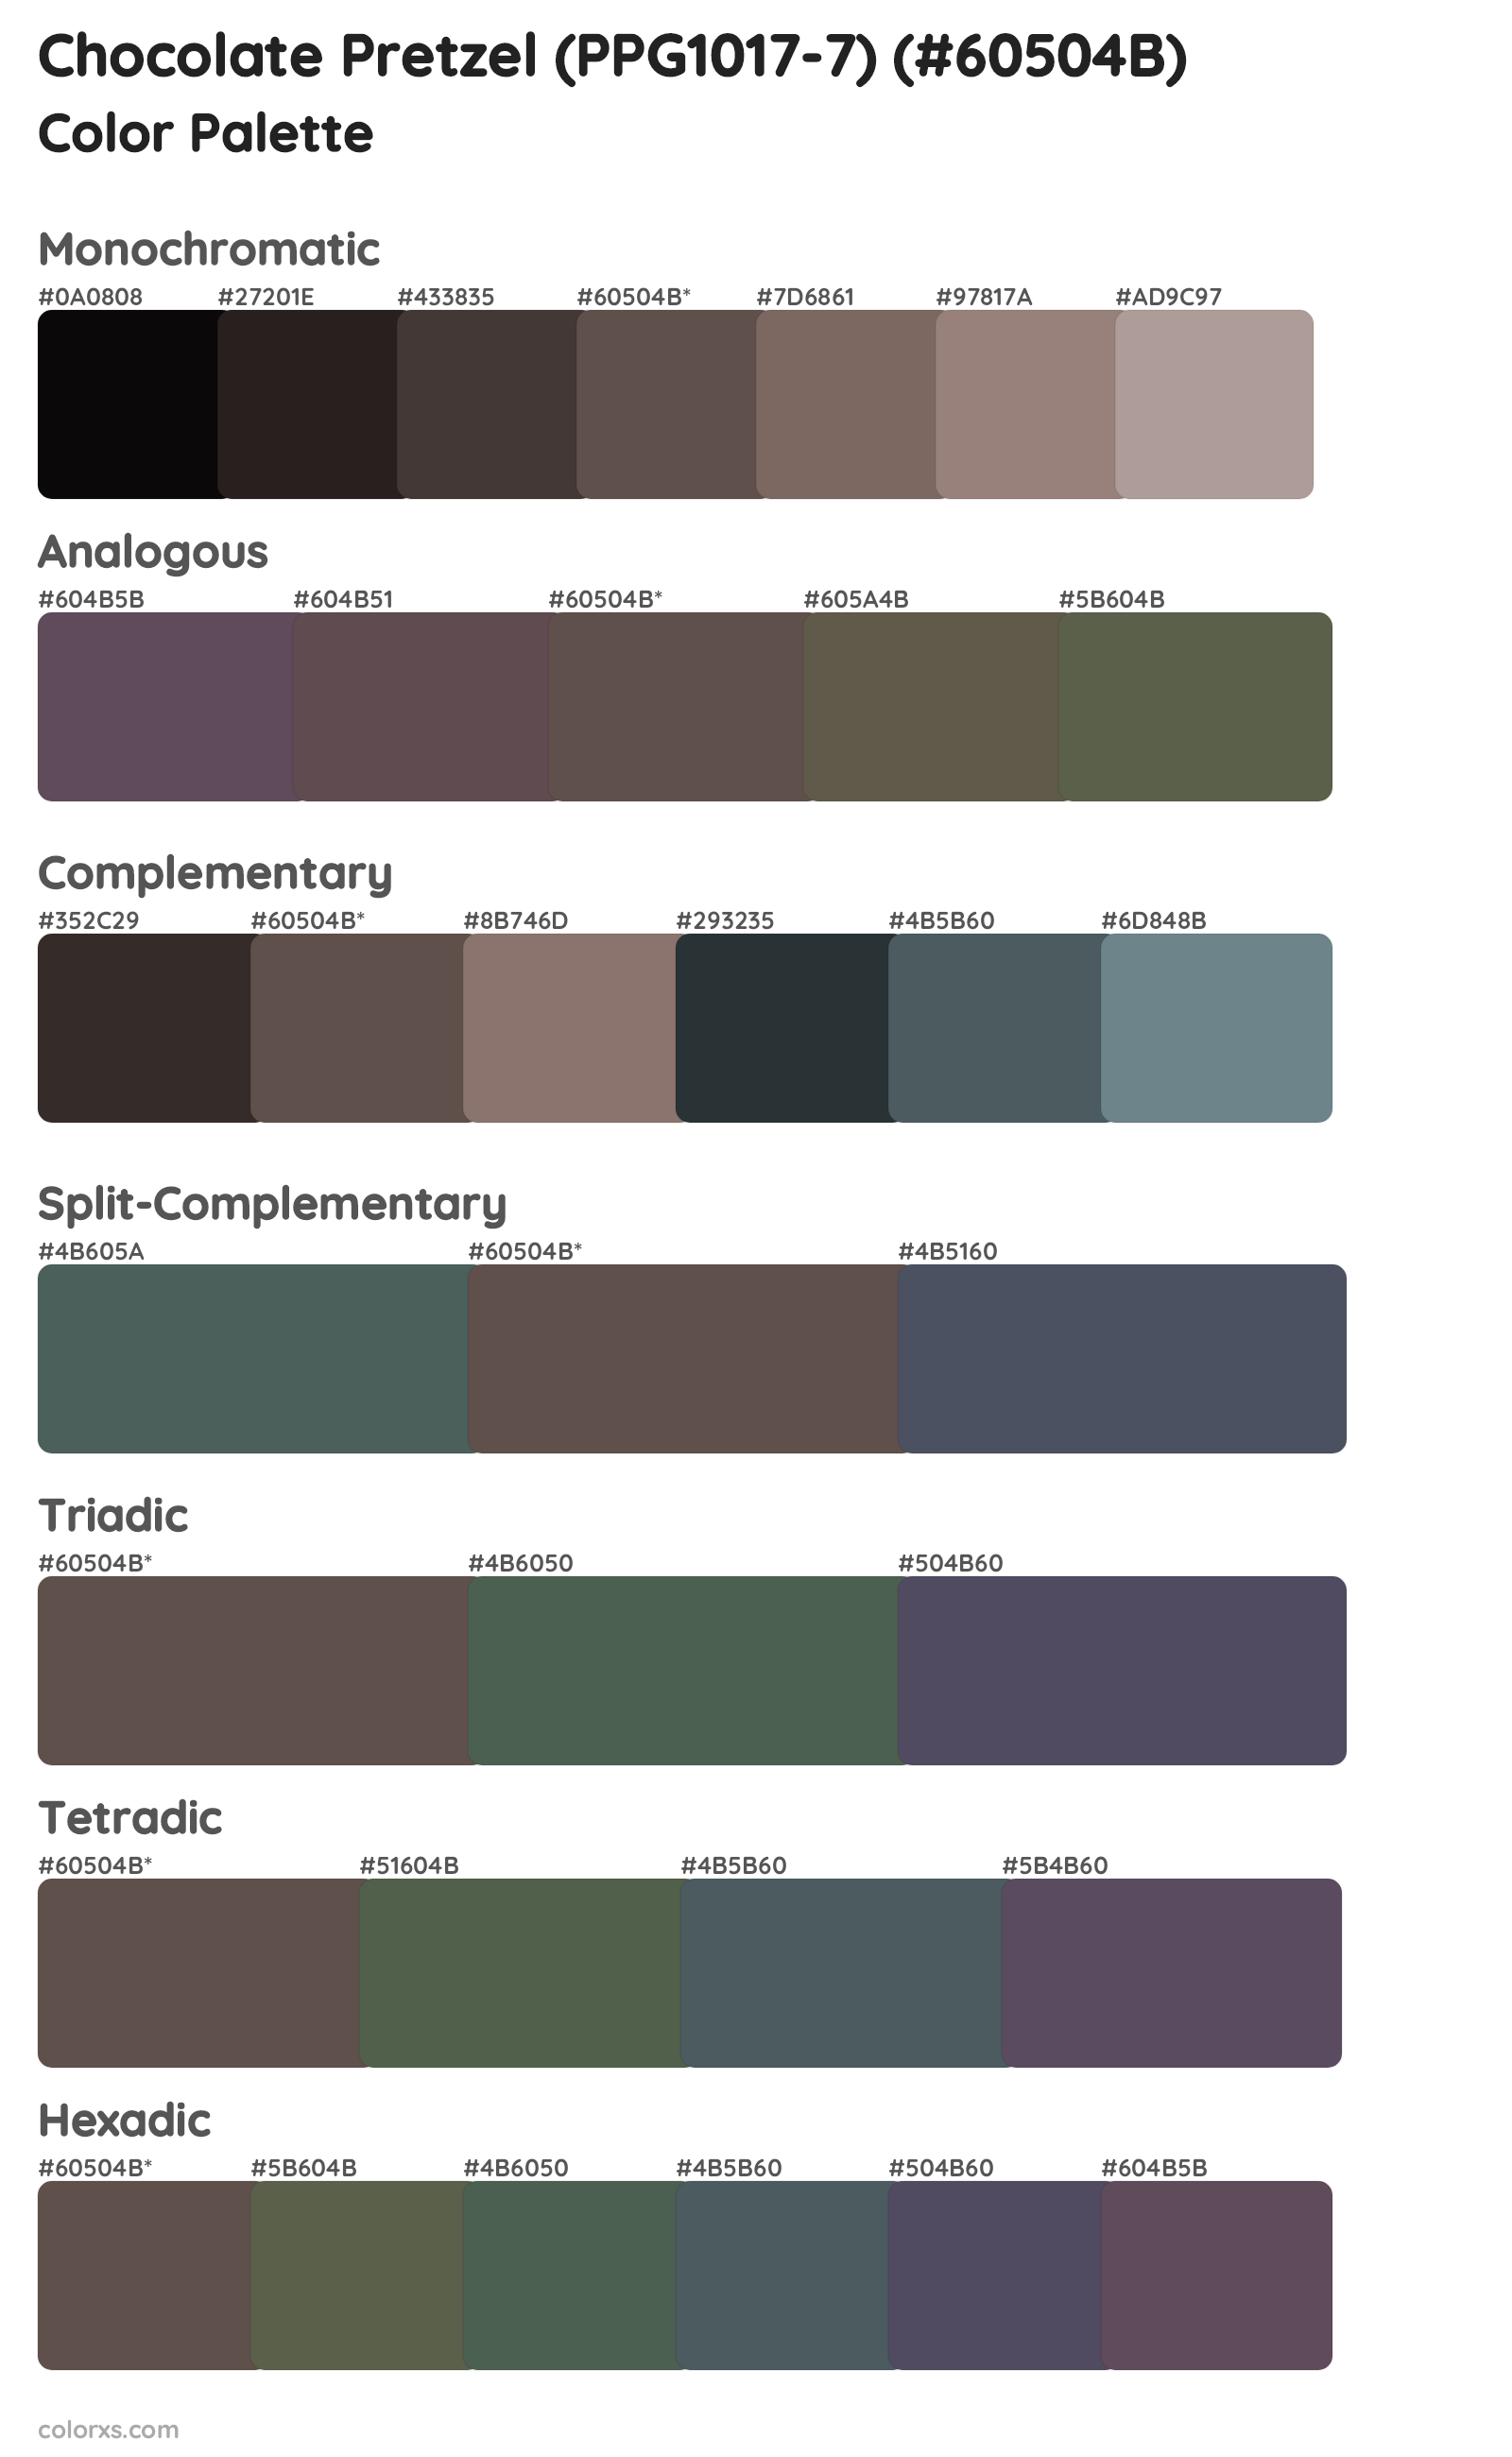 Chocolate Pretzel (PPG1017-7) Color Scheme Palettes